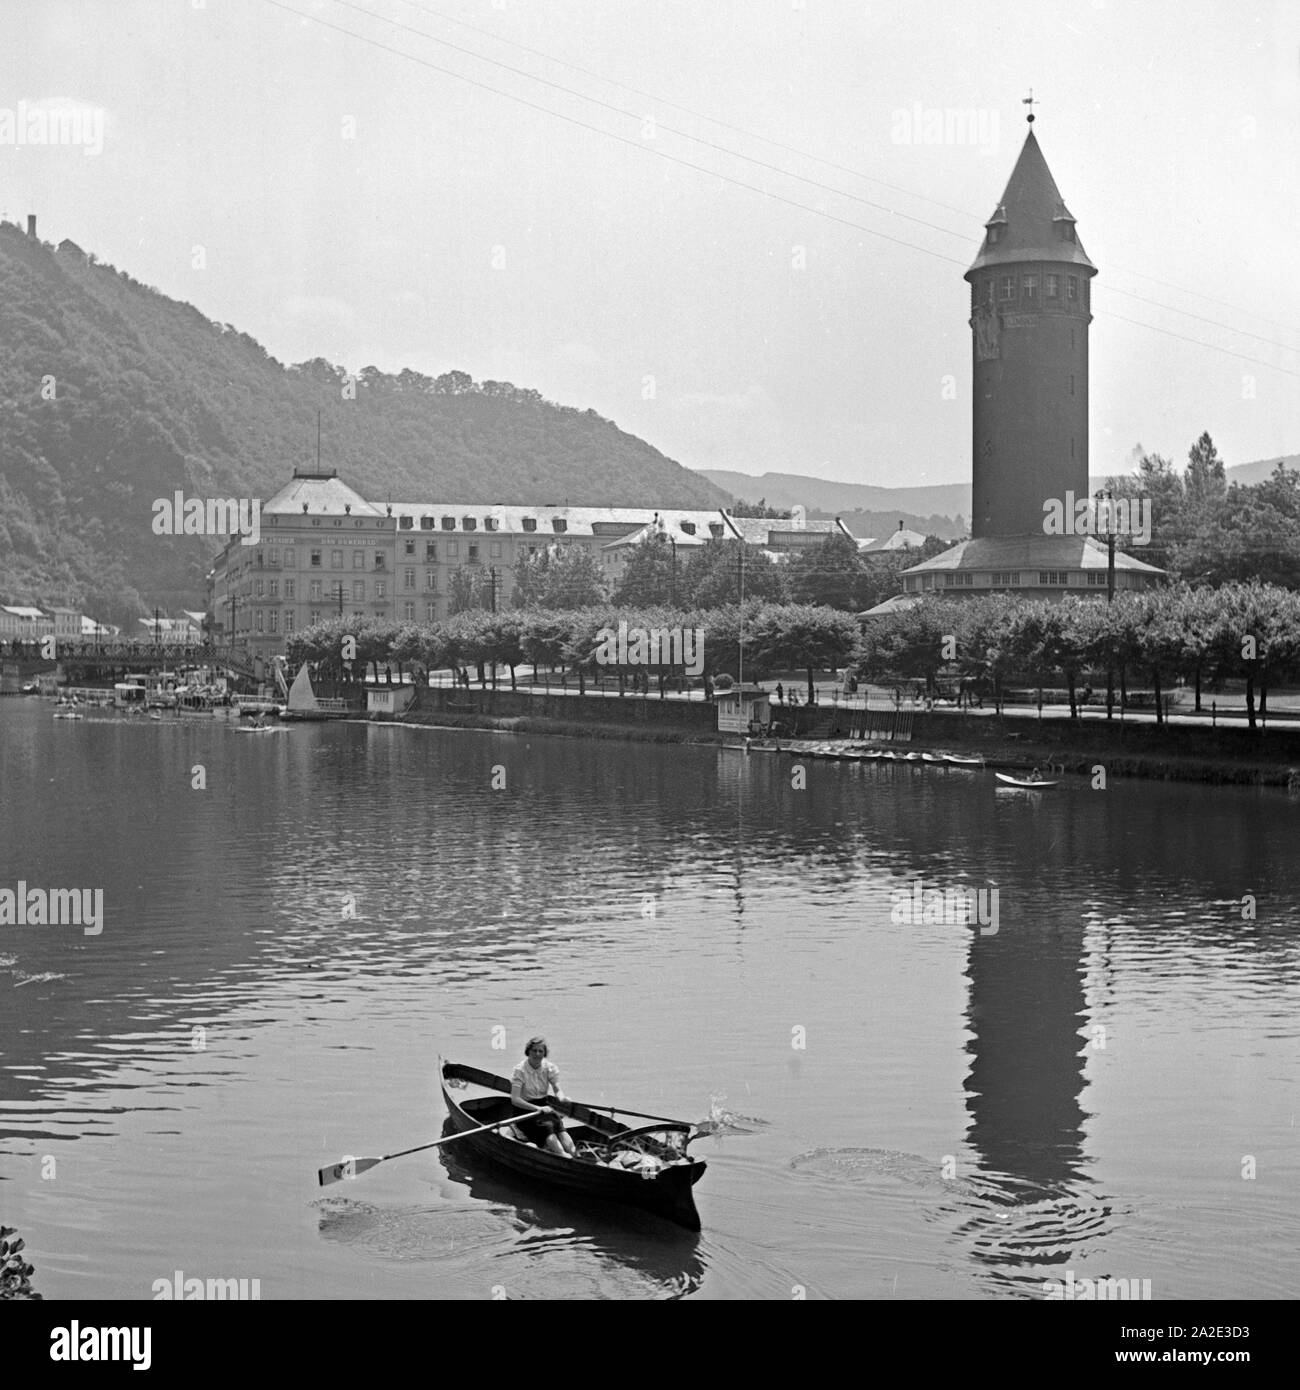 Ruderpartie Quellenturm auf der Lahn suis à Bad Ems, Deutschland 1930 er Jahre. Une femme l'aviron sur la rivière Lahn près du Quellenturm tour de Bad Ems, Allemagne 1930. Banque D'Images